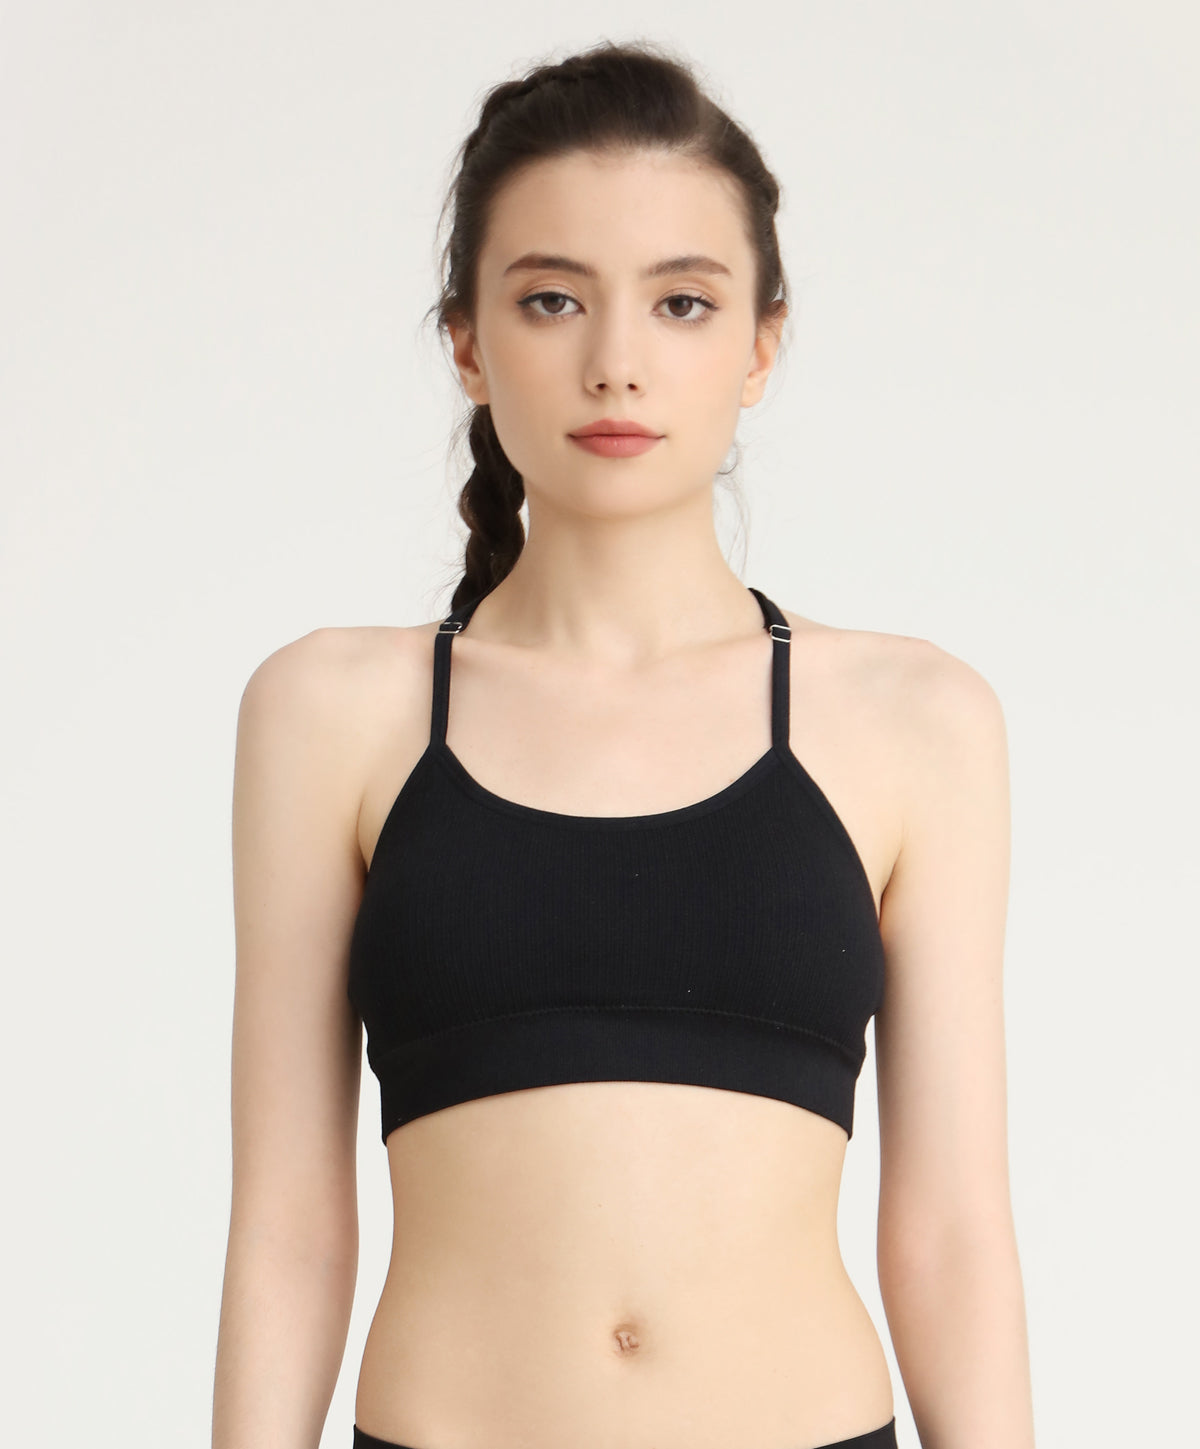 Pierre Cardin Women's Soft Push Up Bralette Bra Set – the best products in  the Joom Geek online store